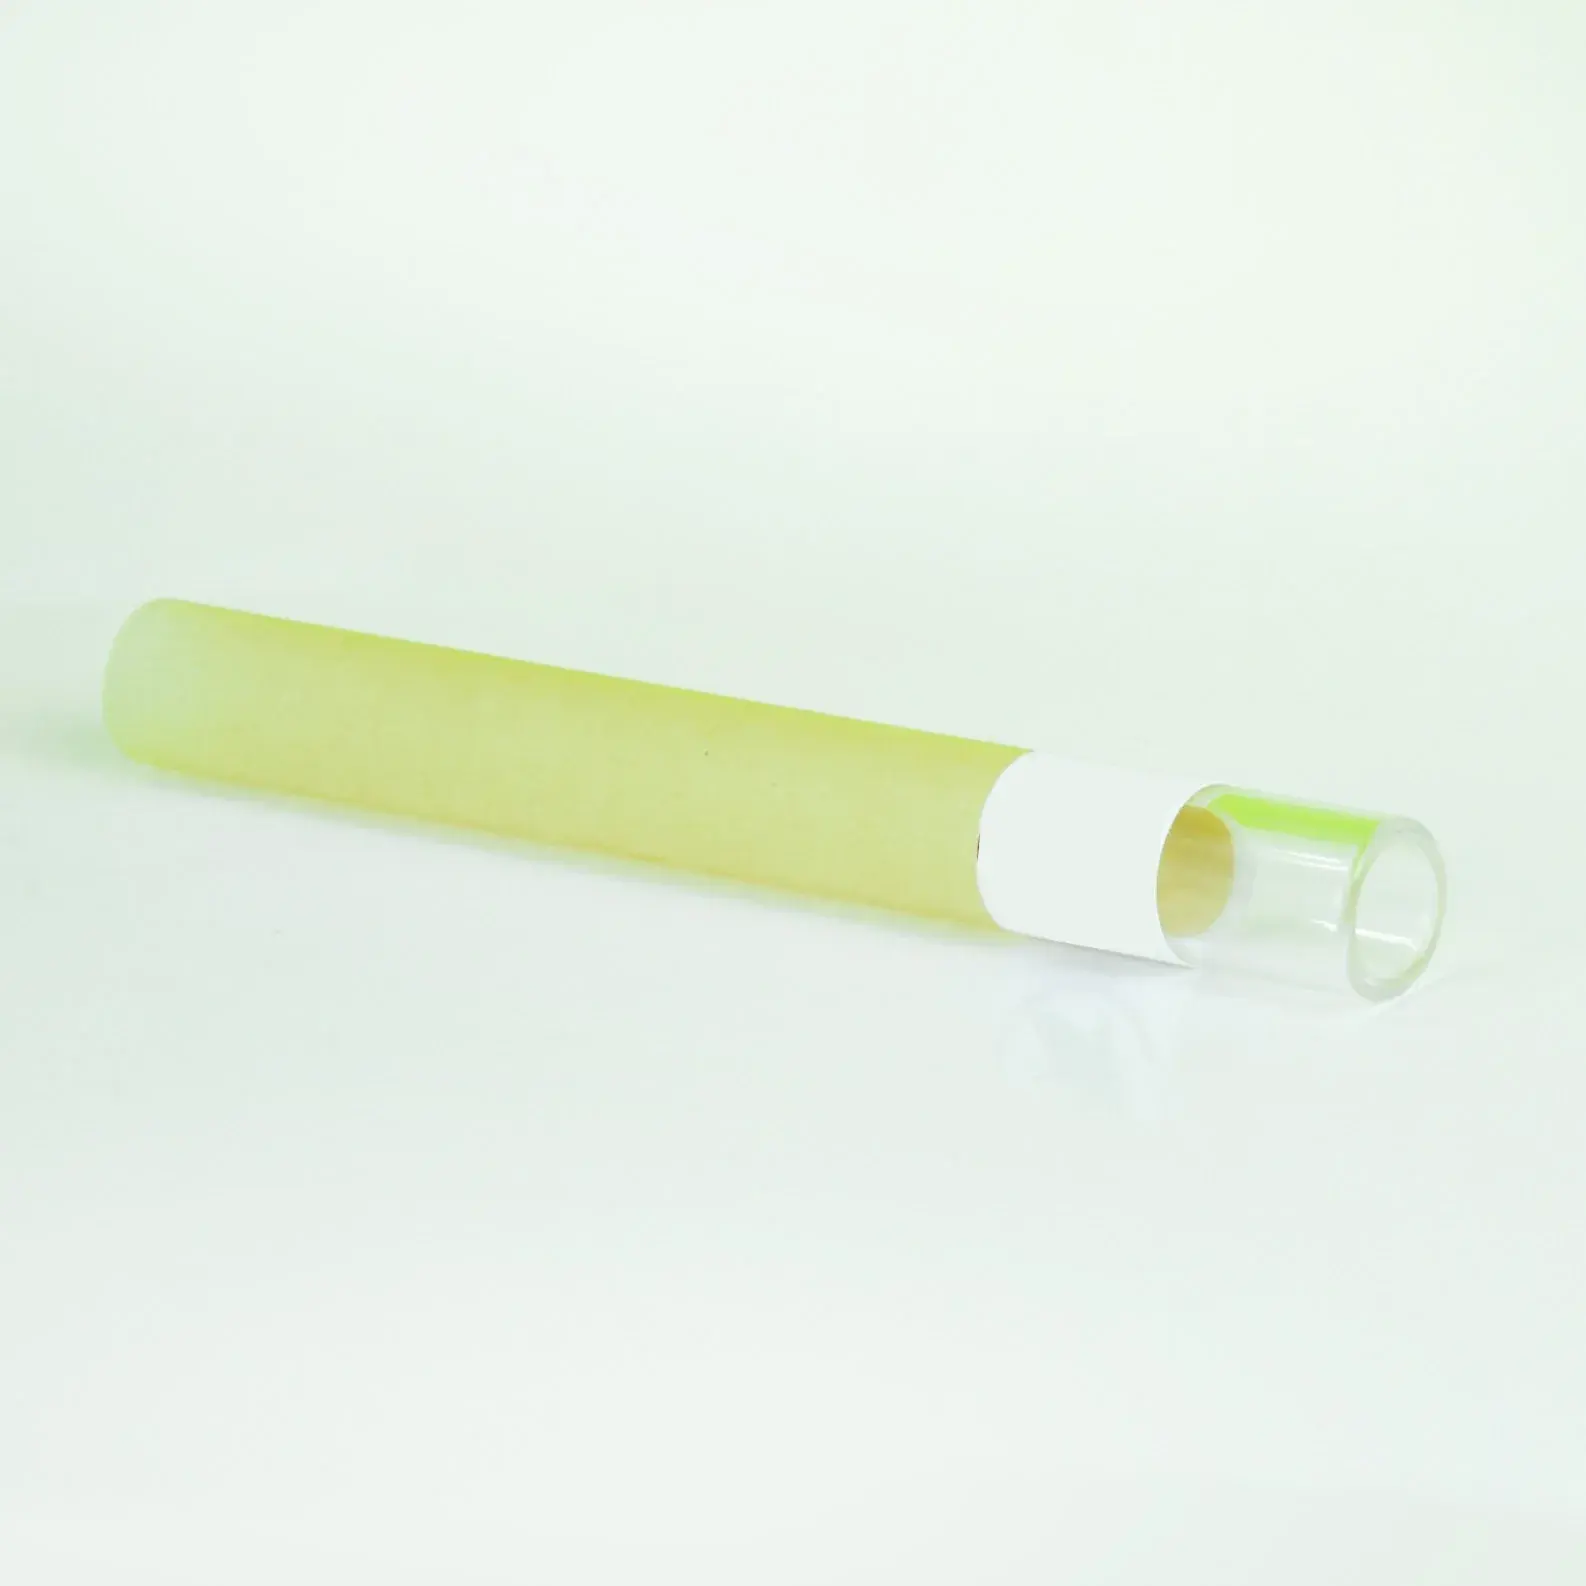 Çin ağartılmamış mühürlü renkli marka adı baskılı plastik boş rulo mikro ince sigara sarma kağıt tüpler cam ucu 8mm